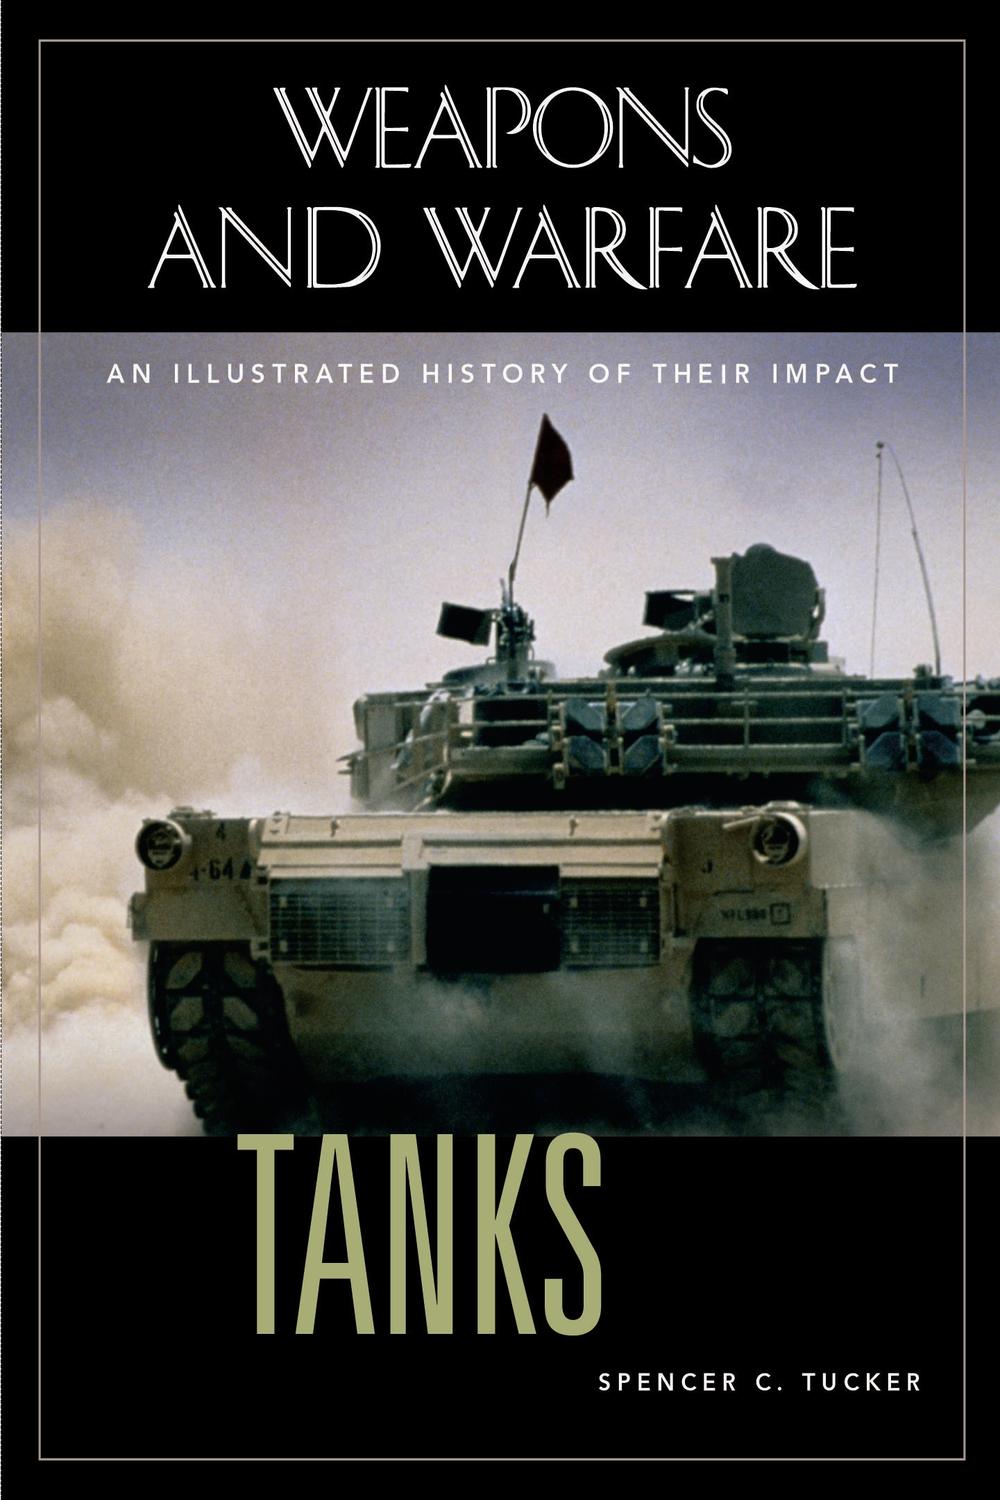 Tanks - Spencer C. Tucker